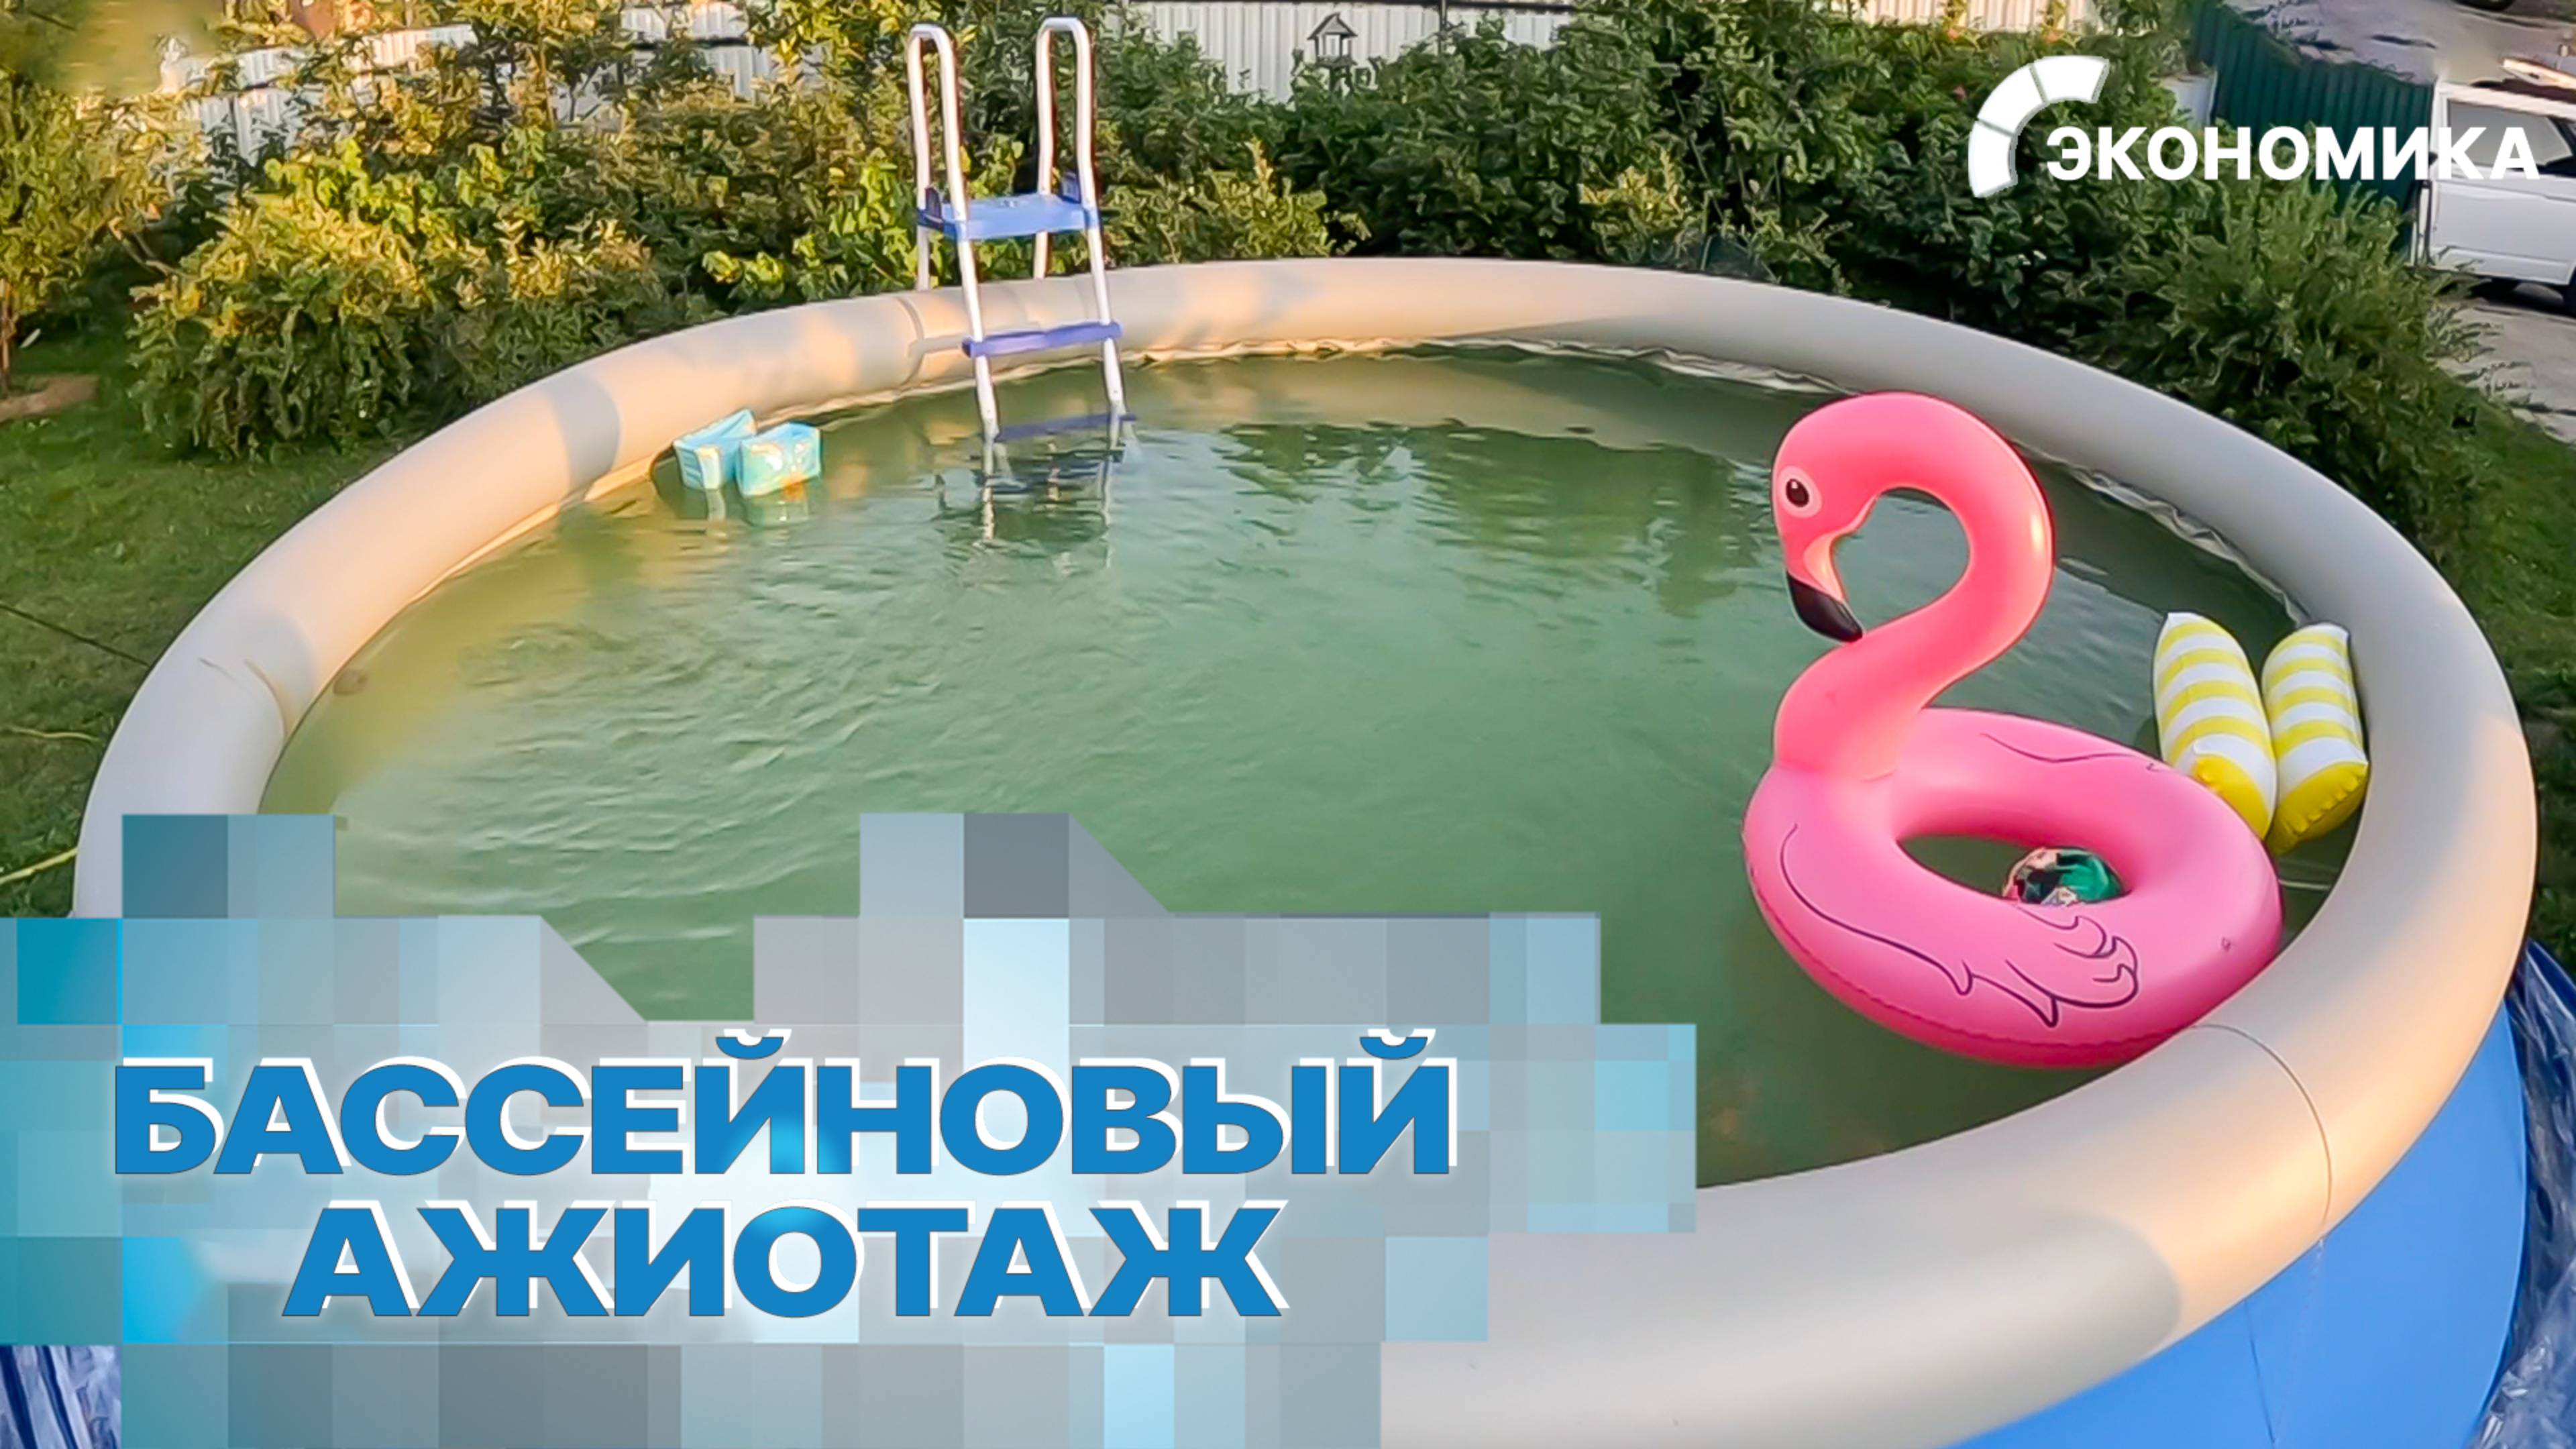 В России из-за аномальной жары растут продажи бассейнов. Что необходимо знать перед покупкой?